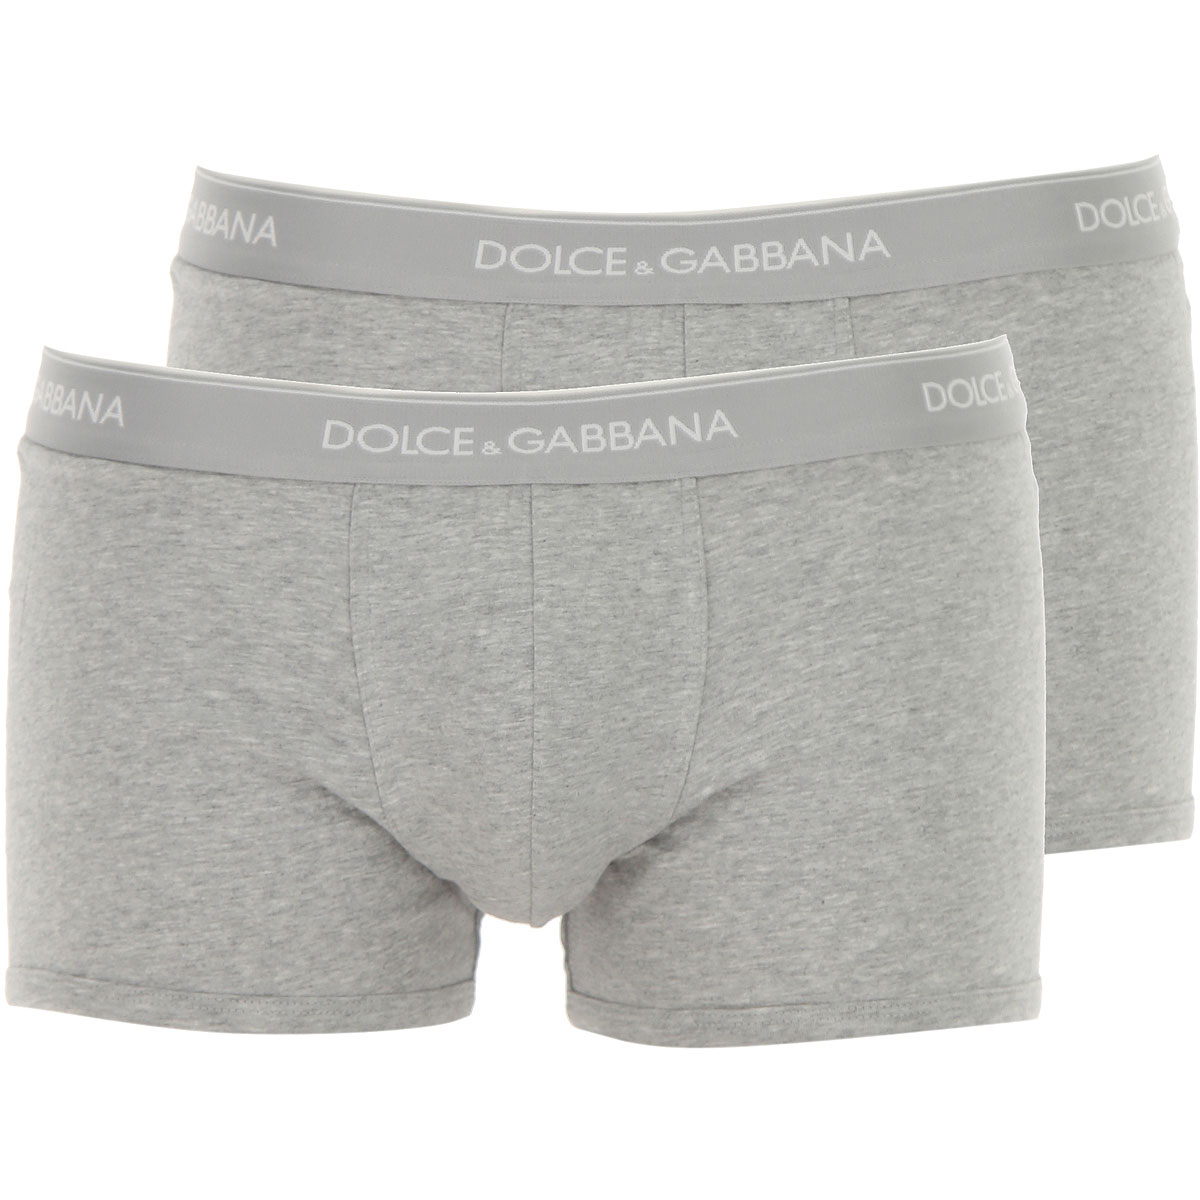 Dolce & Gabbana Boxer Shorts für Herren, Unterhose, Short, Boxer Günstig im Sale, 2 Pack, Melange Grau, Baumwolle, 2017, L M S